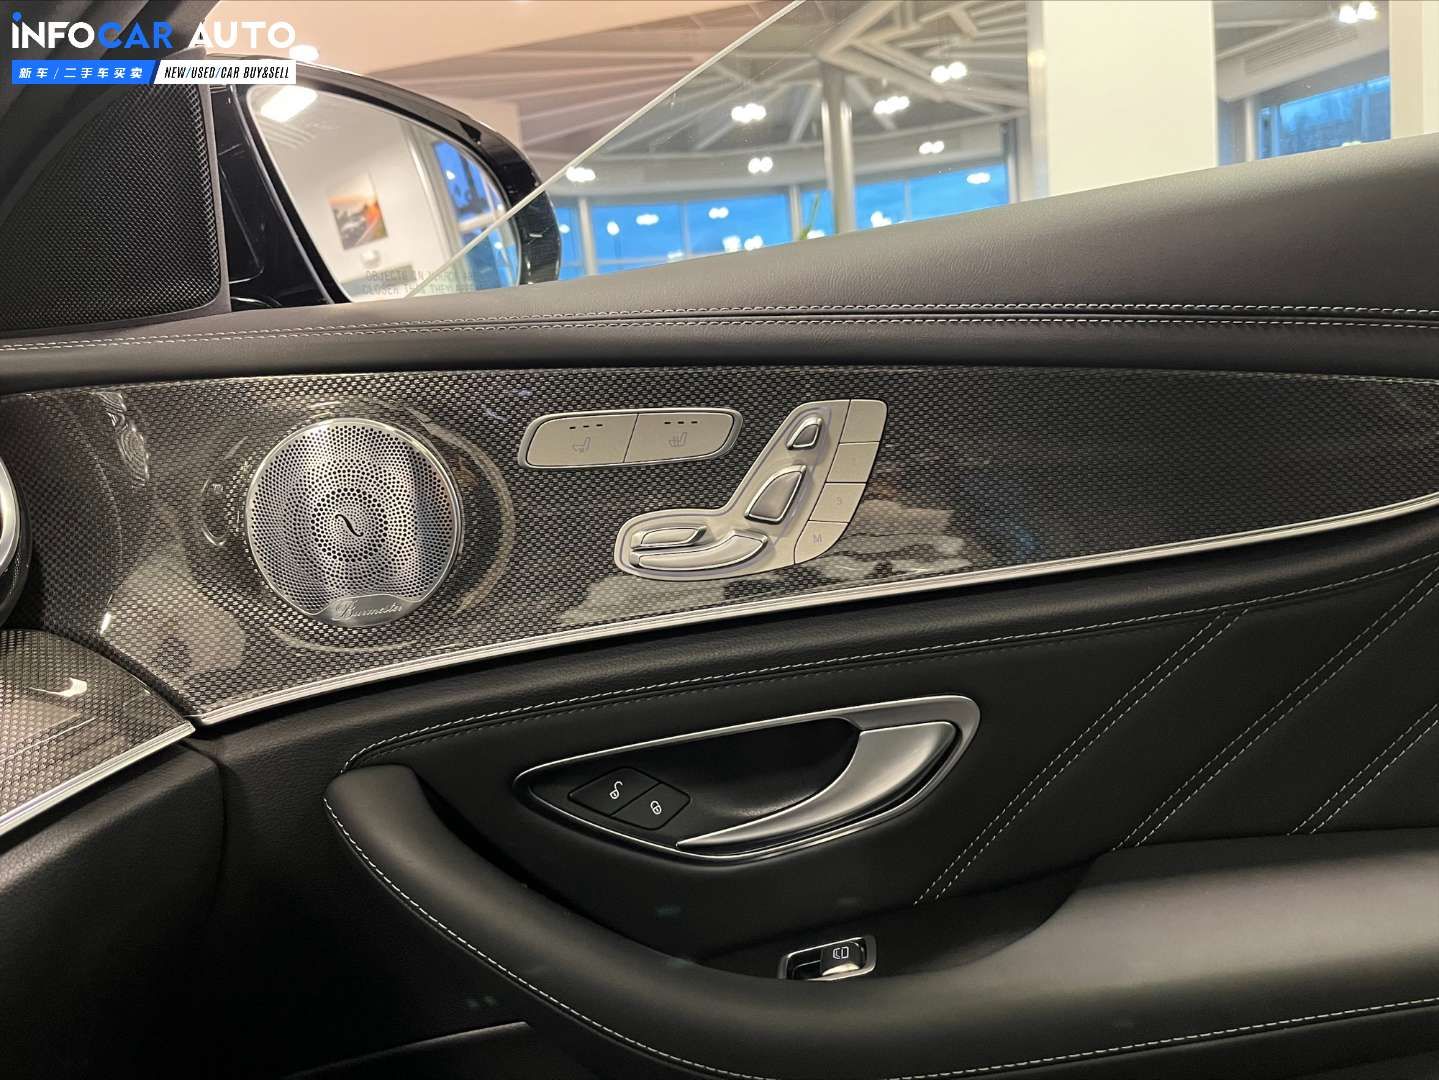 2020 Mercedes-Benz E-Class E63 - INFOCAR - Toronto Auto Trading Platform